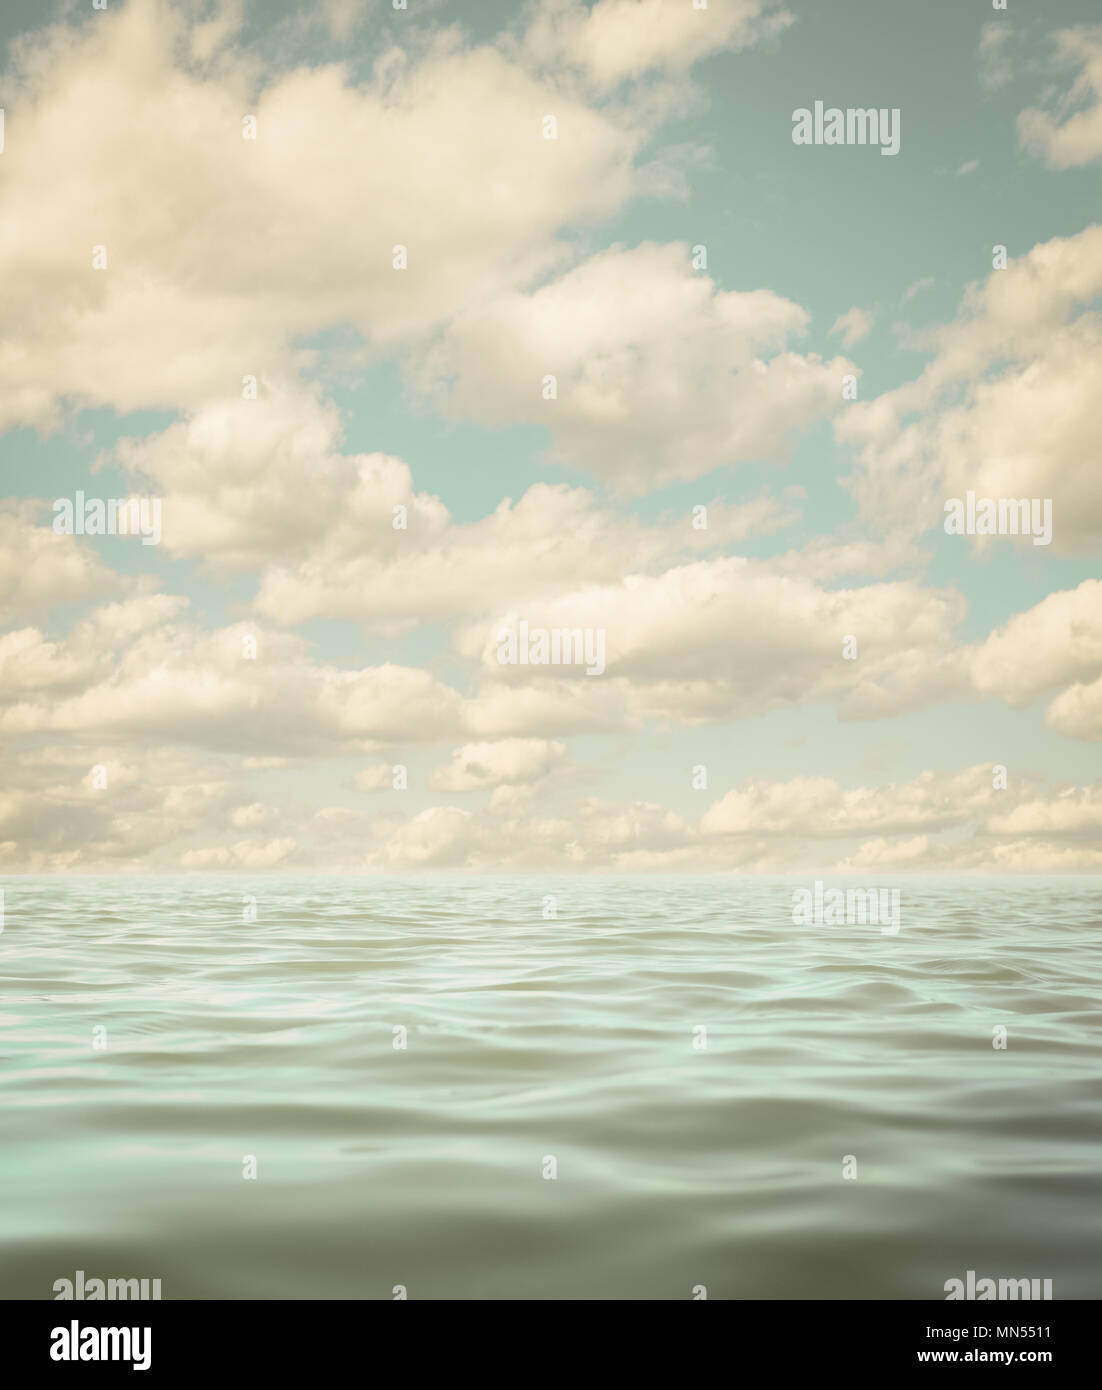 Noch ruhiger See oder Meer Wasser Oberfläche im Alter foto Hintergrund Stockfoto